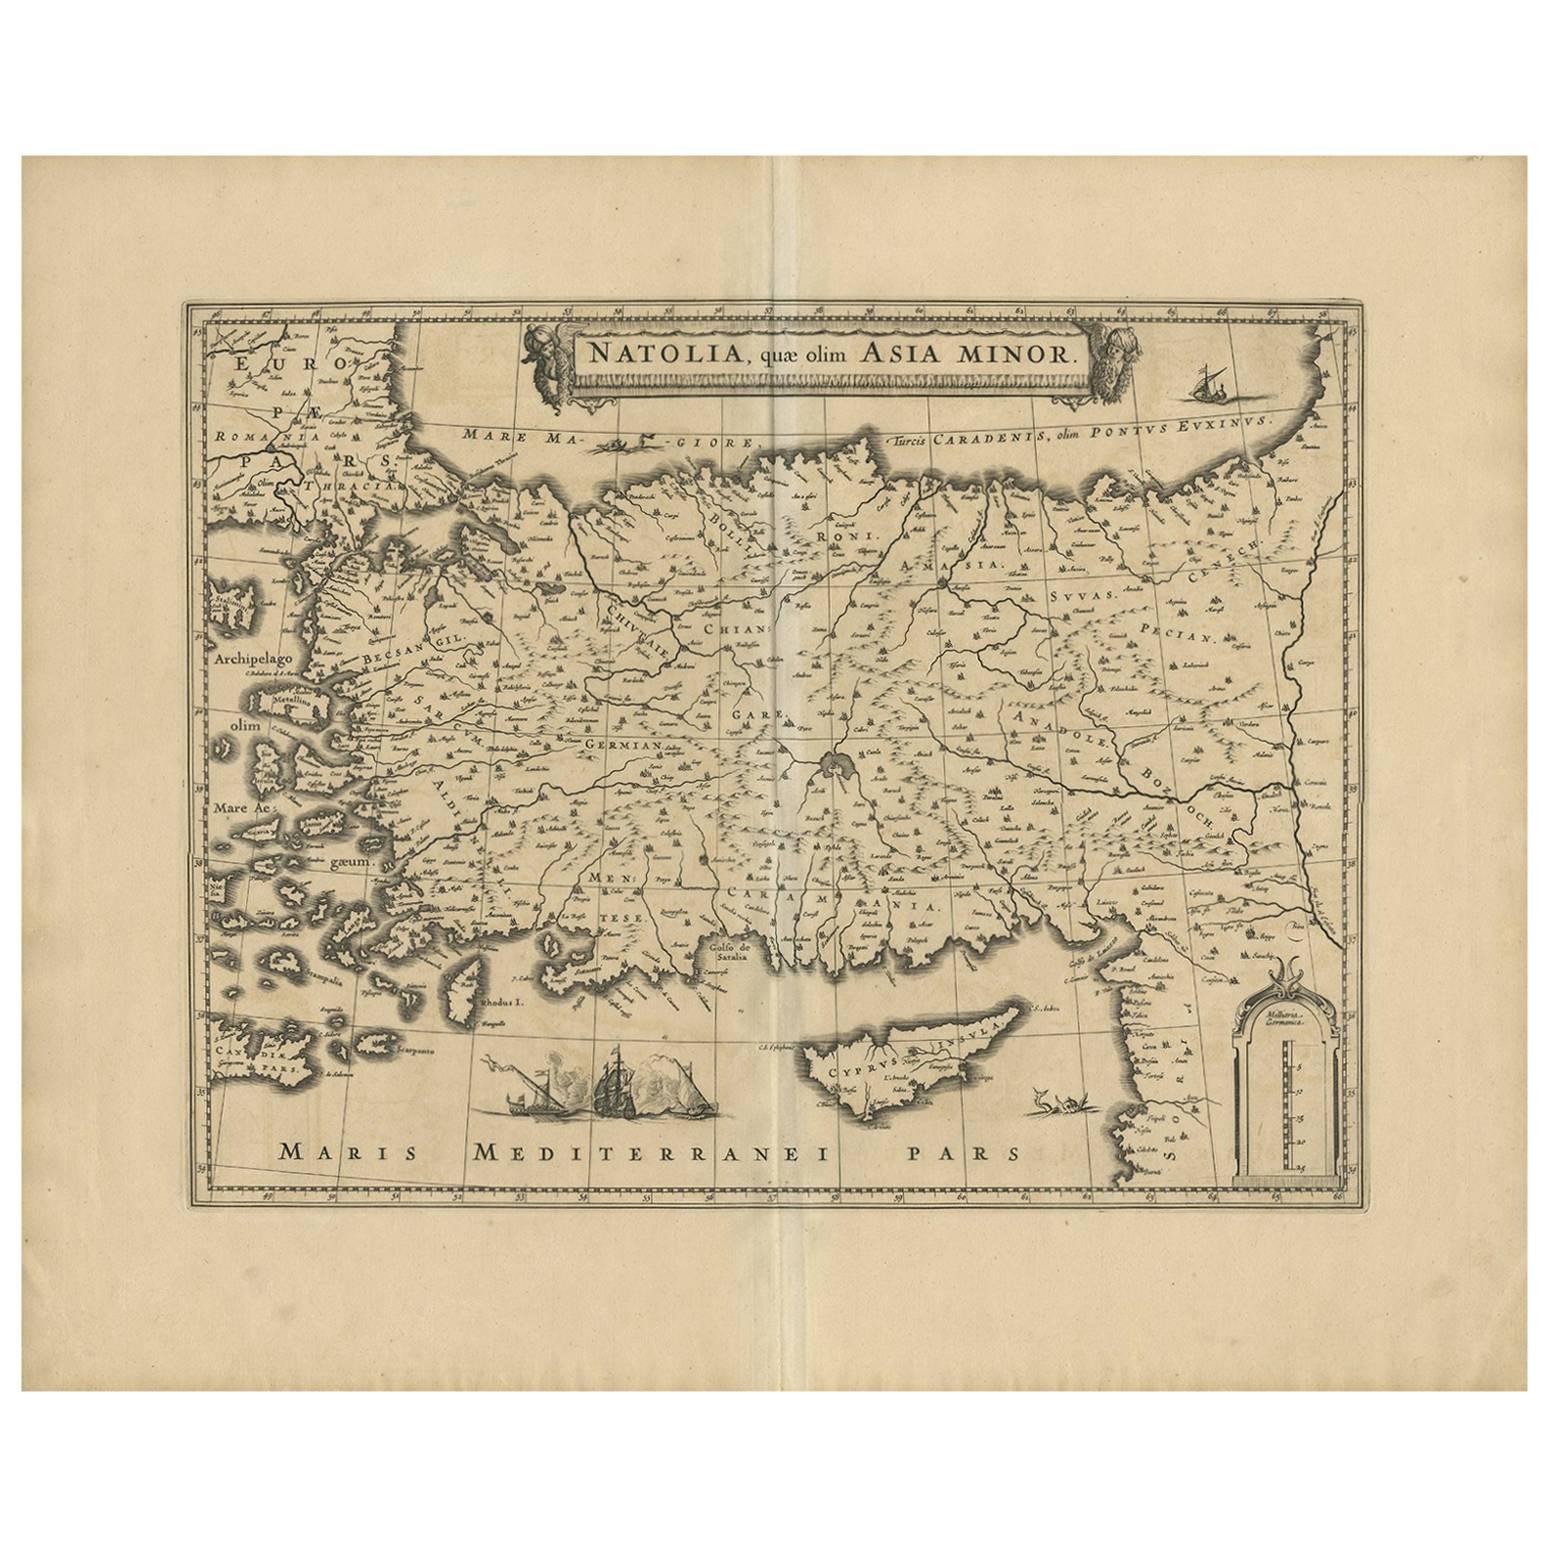 Tapisserie cartographique : Carte ancienne de l'Asie mineure, vers 1640